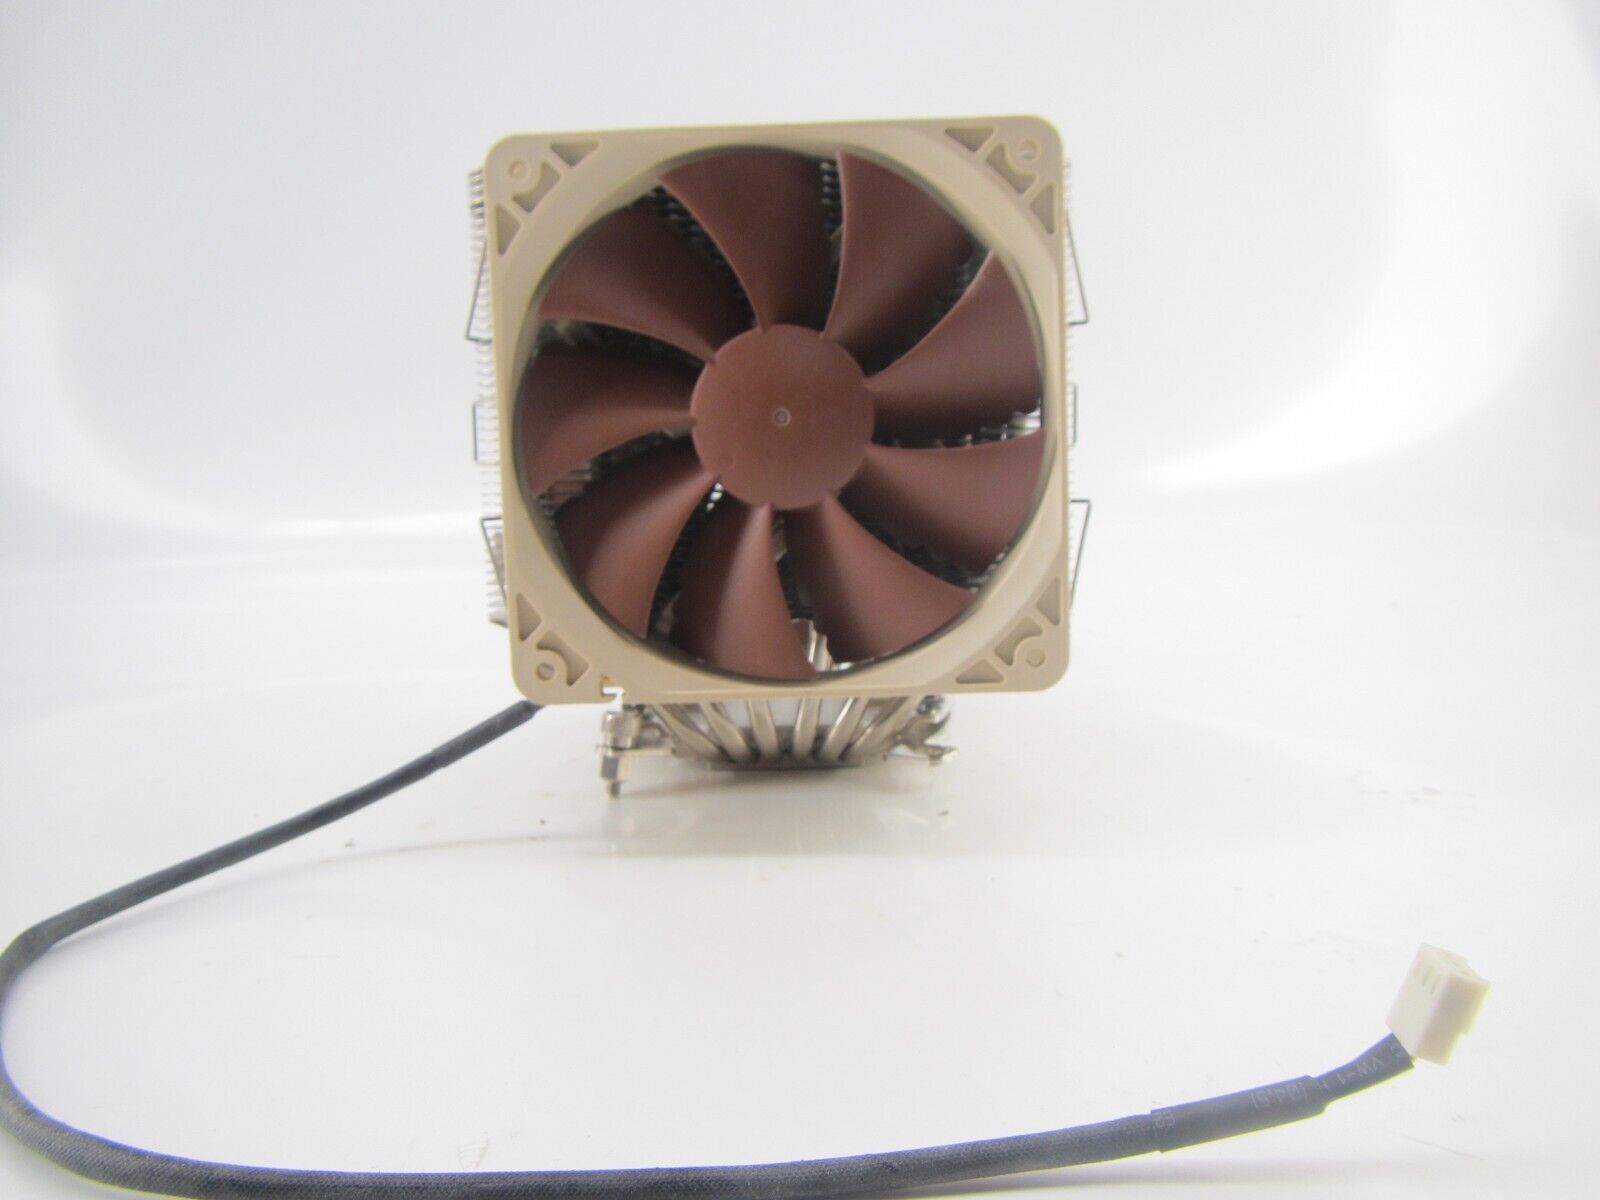 Noctua NH-U12A CPU Cooler - 2x 120mm fans